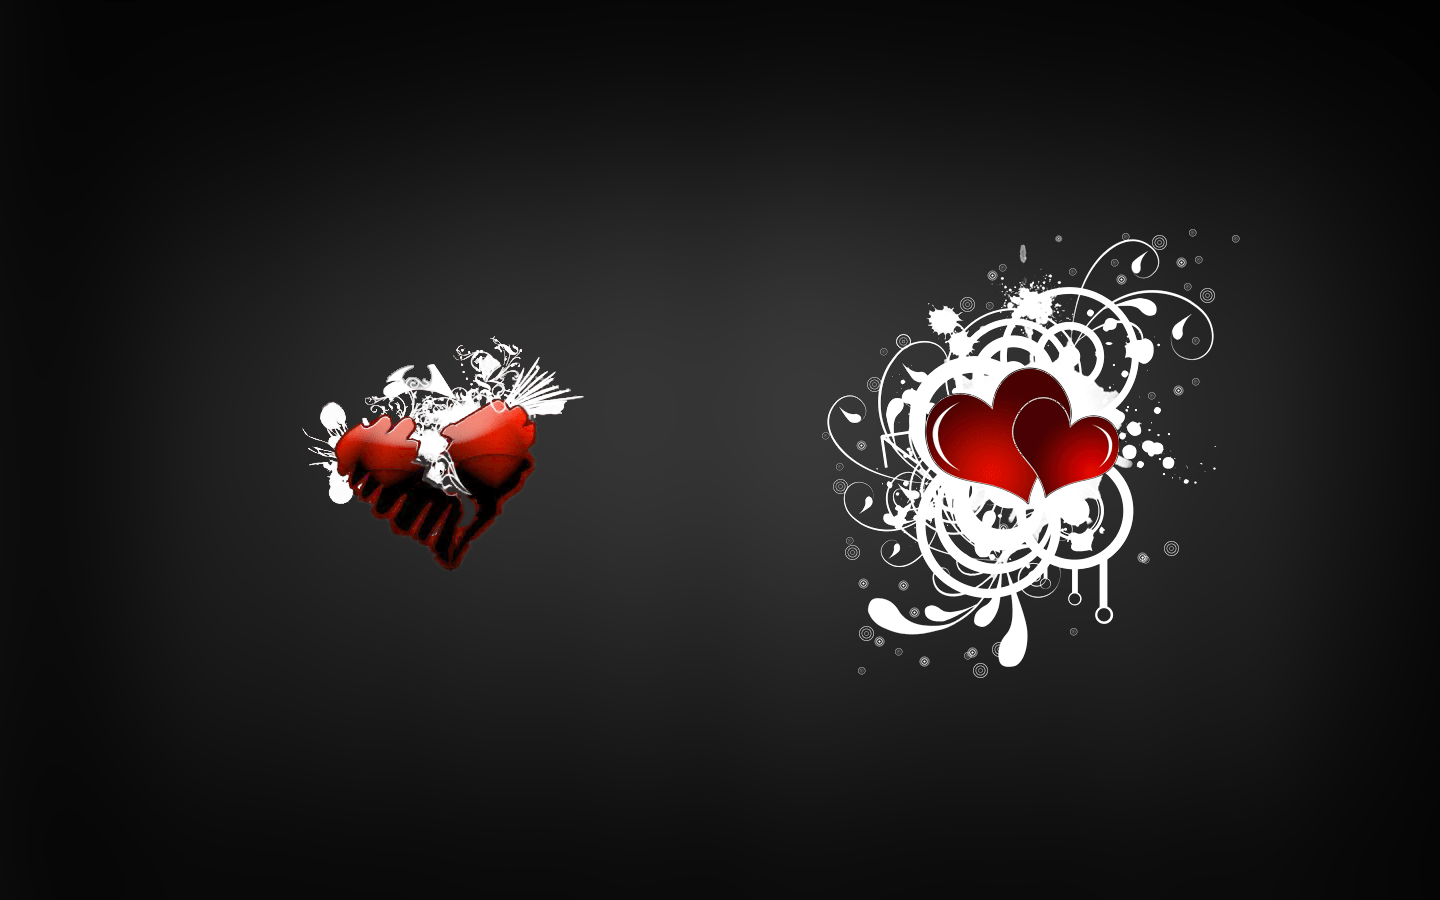 1440x900 Tải xuống miễn phí Hình nền trái tim tan vỡ Trái tim màu đen với màu đỏ PelautsCom [1440x900] cho Máy tính để bàn, Di động & Máy tính bảng của bạn.  Khám phá hình nền trái tim tan vỡ.  Trái tim tan vỡ Hình nền có độ phân giải cao, Hình nền trái tim